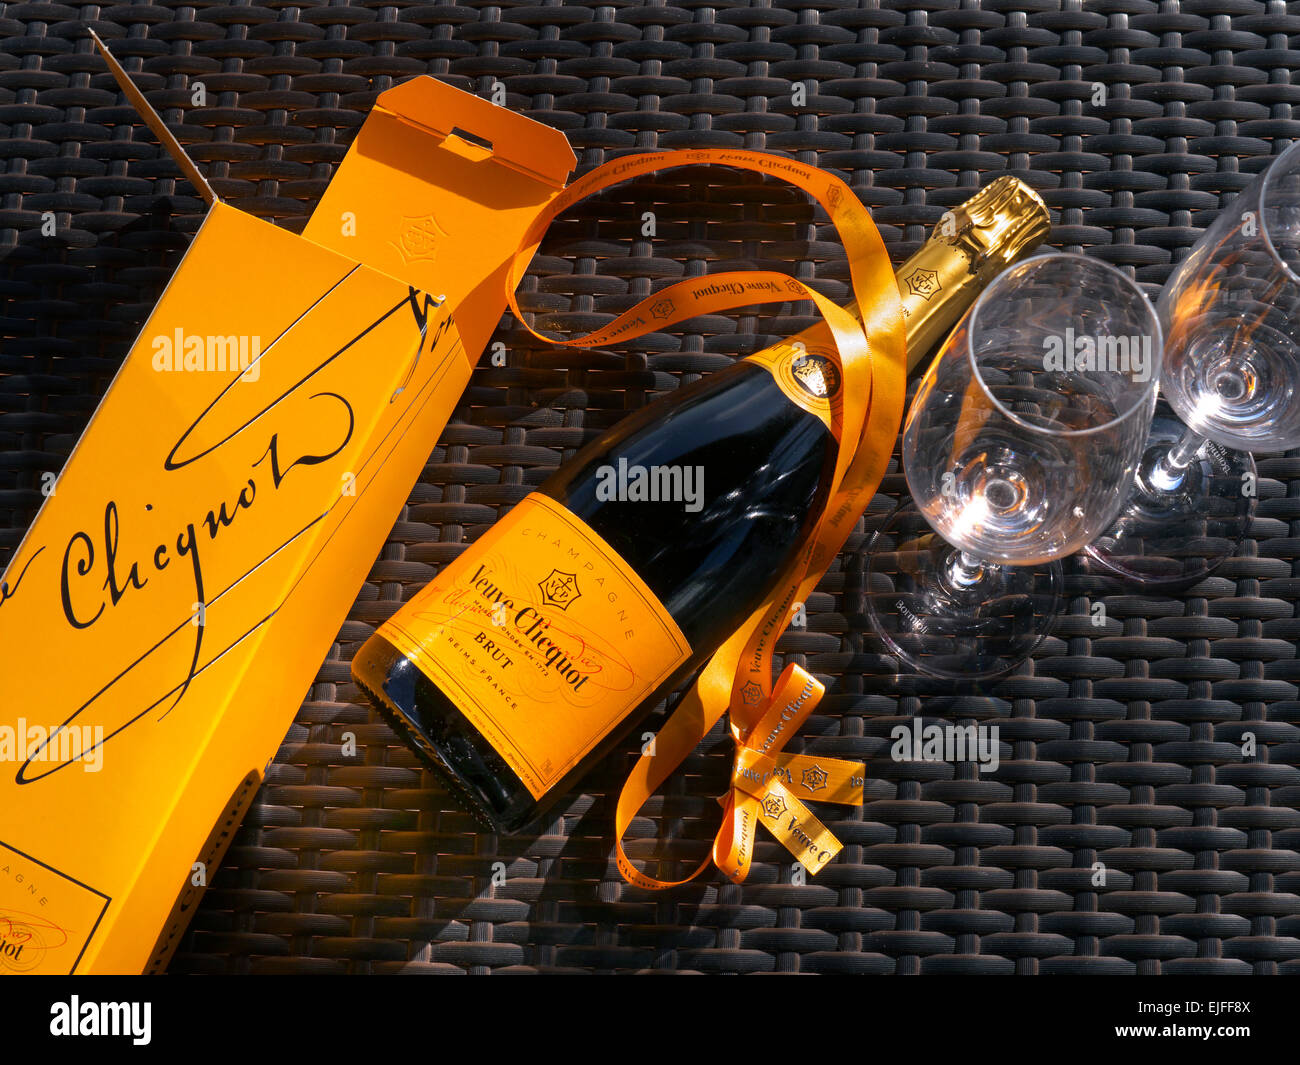 Botella de Champagne Veuve Clicquot presentación caja y gafas de sol la  superficie de la mesa de mimbre exterior Fotografía de stock - Alamy